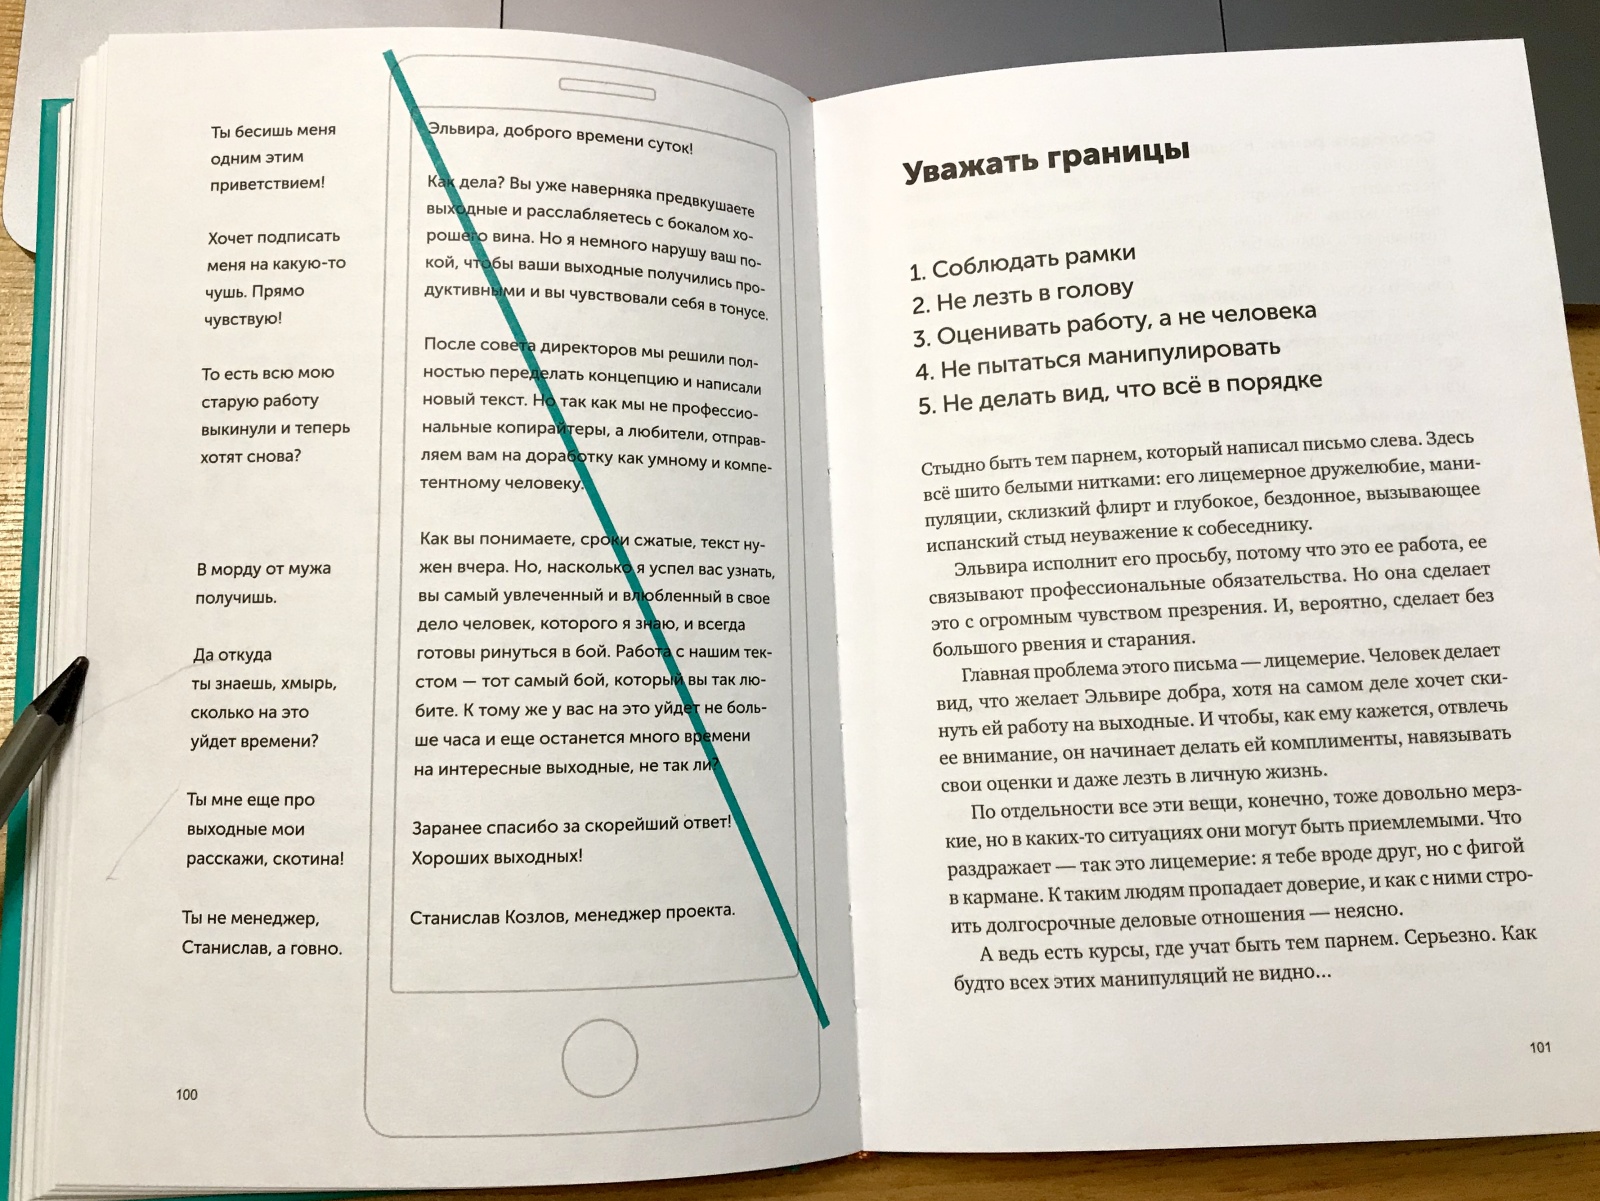 Новые правила деловой переписки. Мнение о новой книге Максима Ильяхова и Людмилы Сарычевой - 2